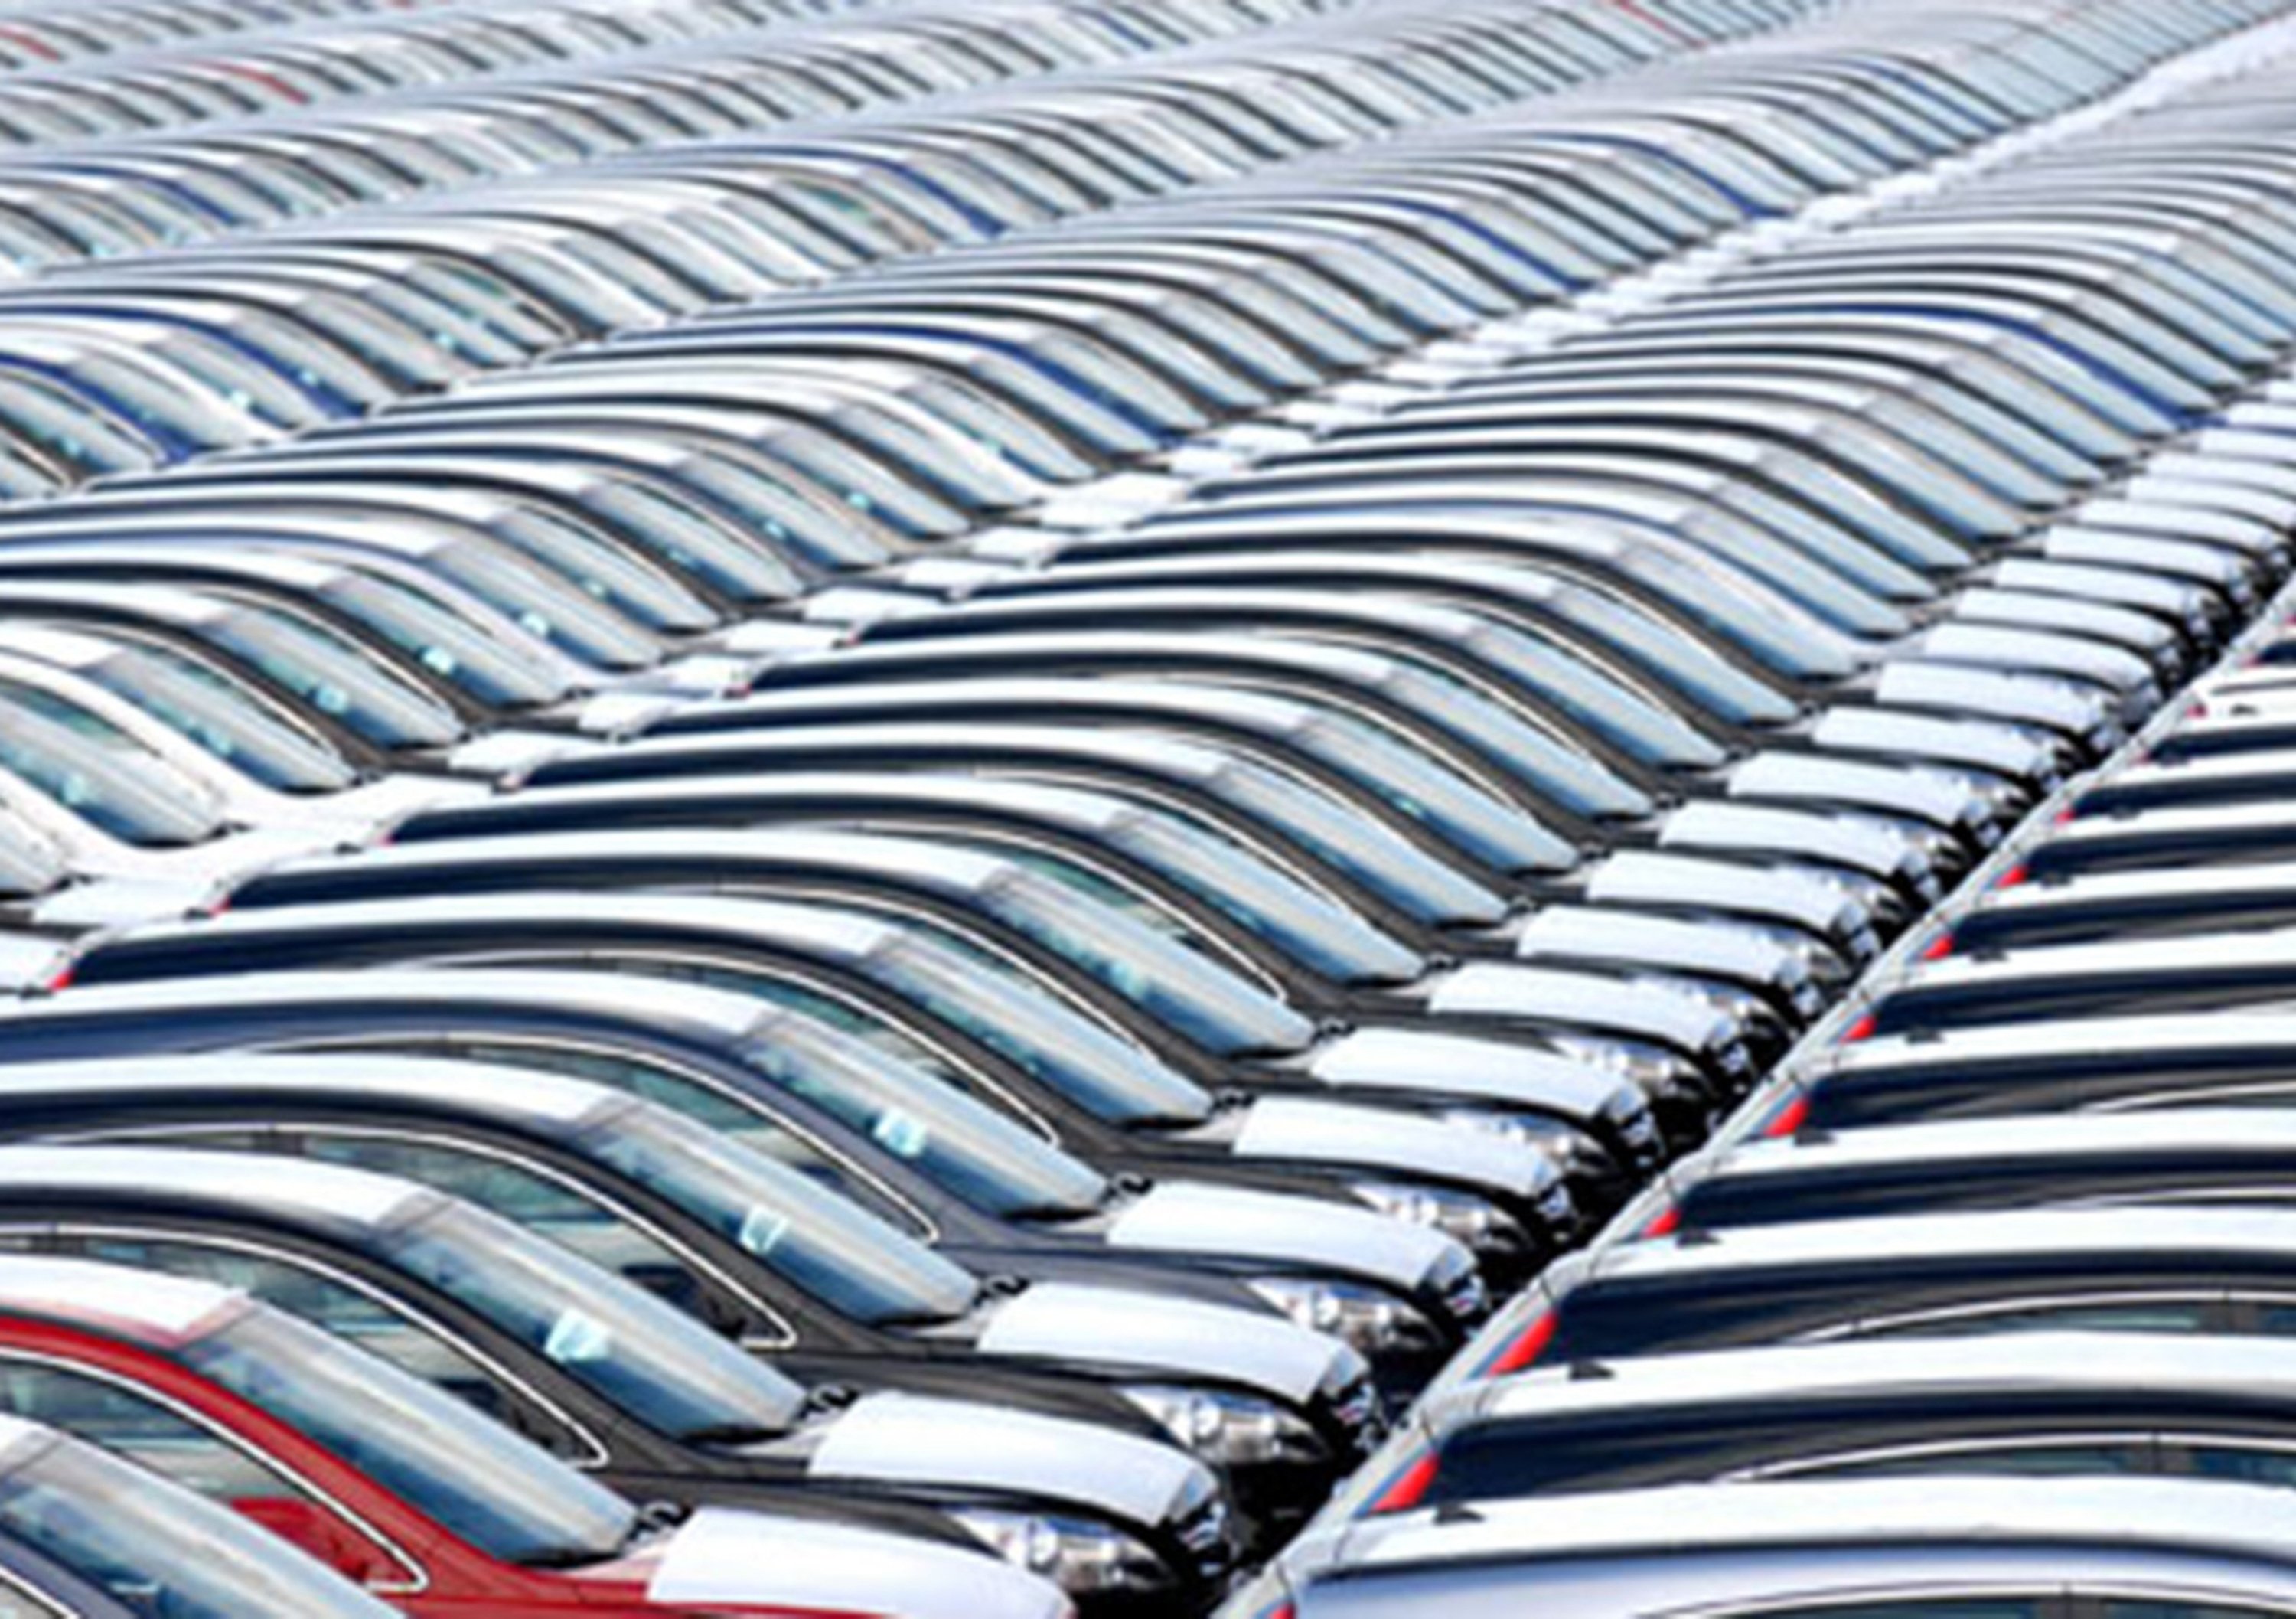 Mercato auto Italia: + 4,2% nel 2014. Torna positivo dopo 7 anni